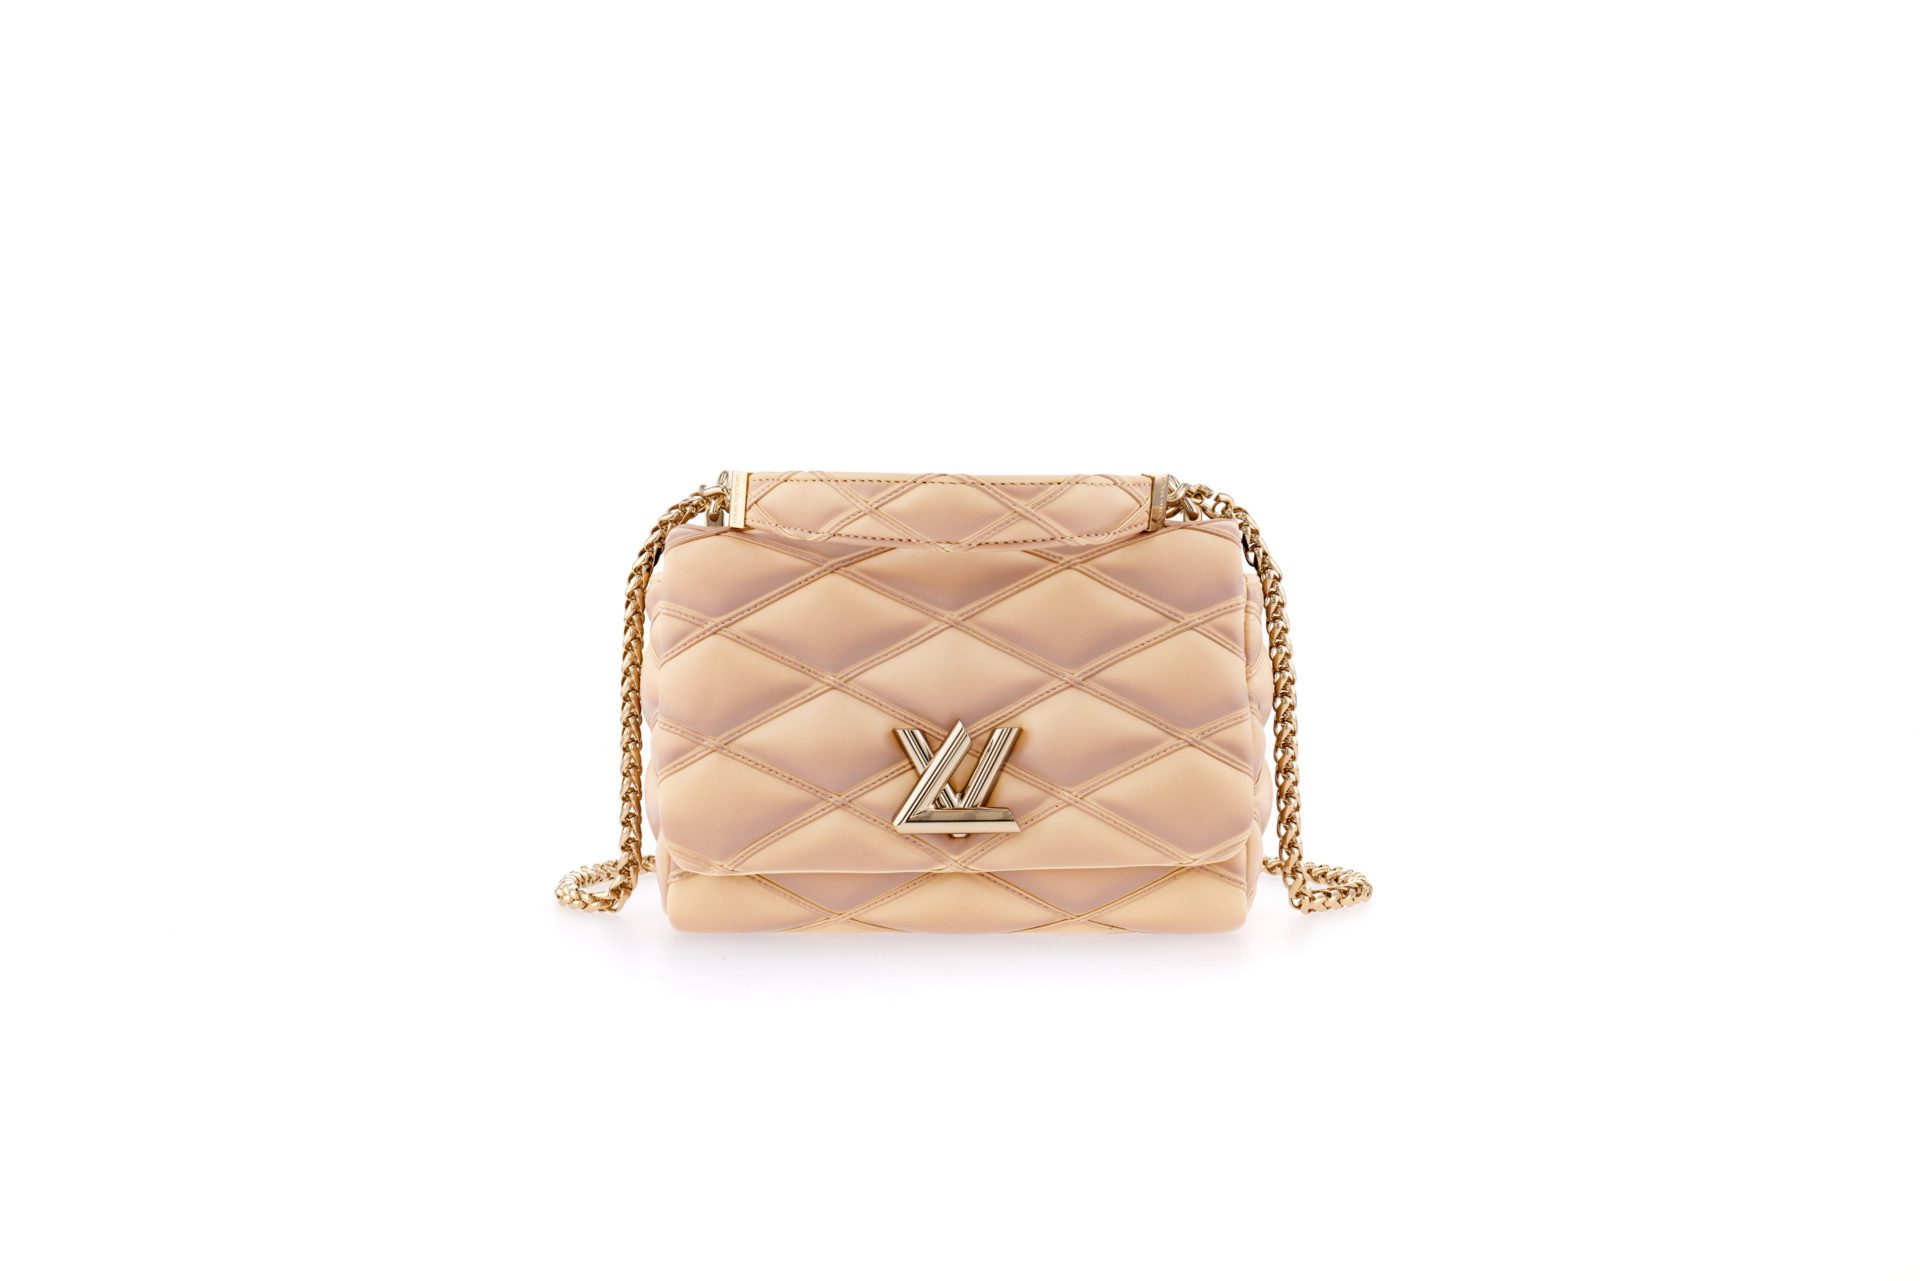 Louis Vuitton lo vuelve a hacer: este es el bolso más deseado de la  temporada